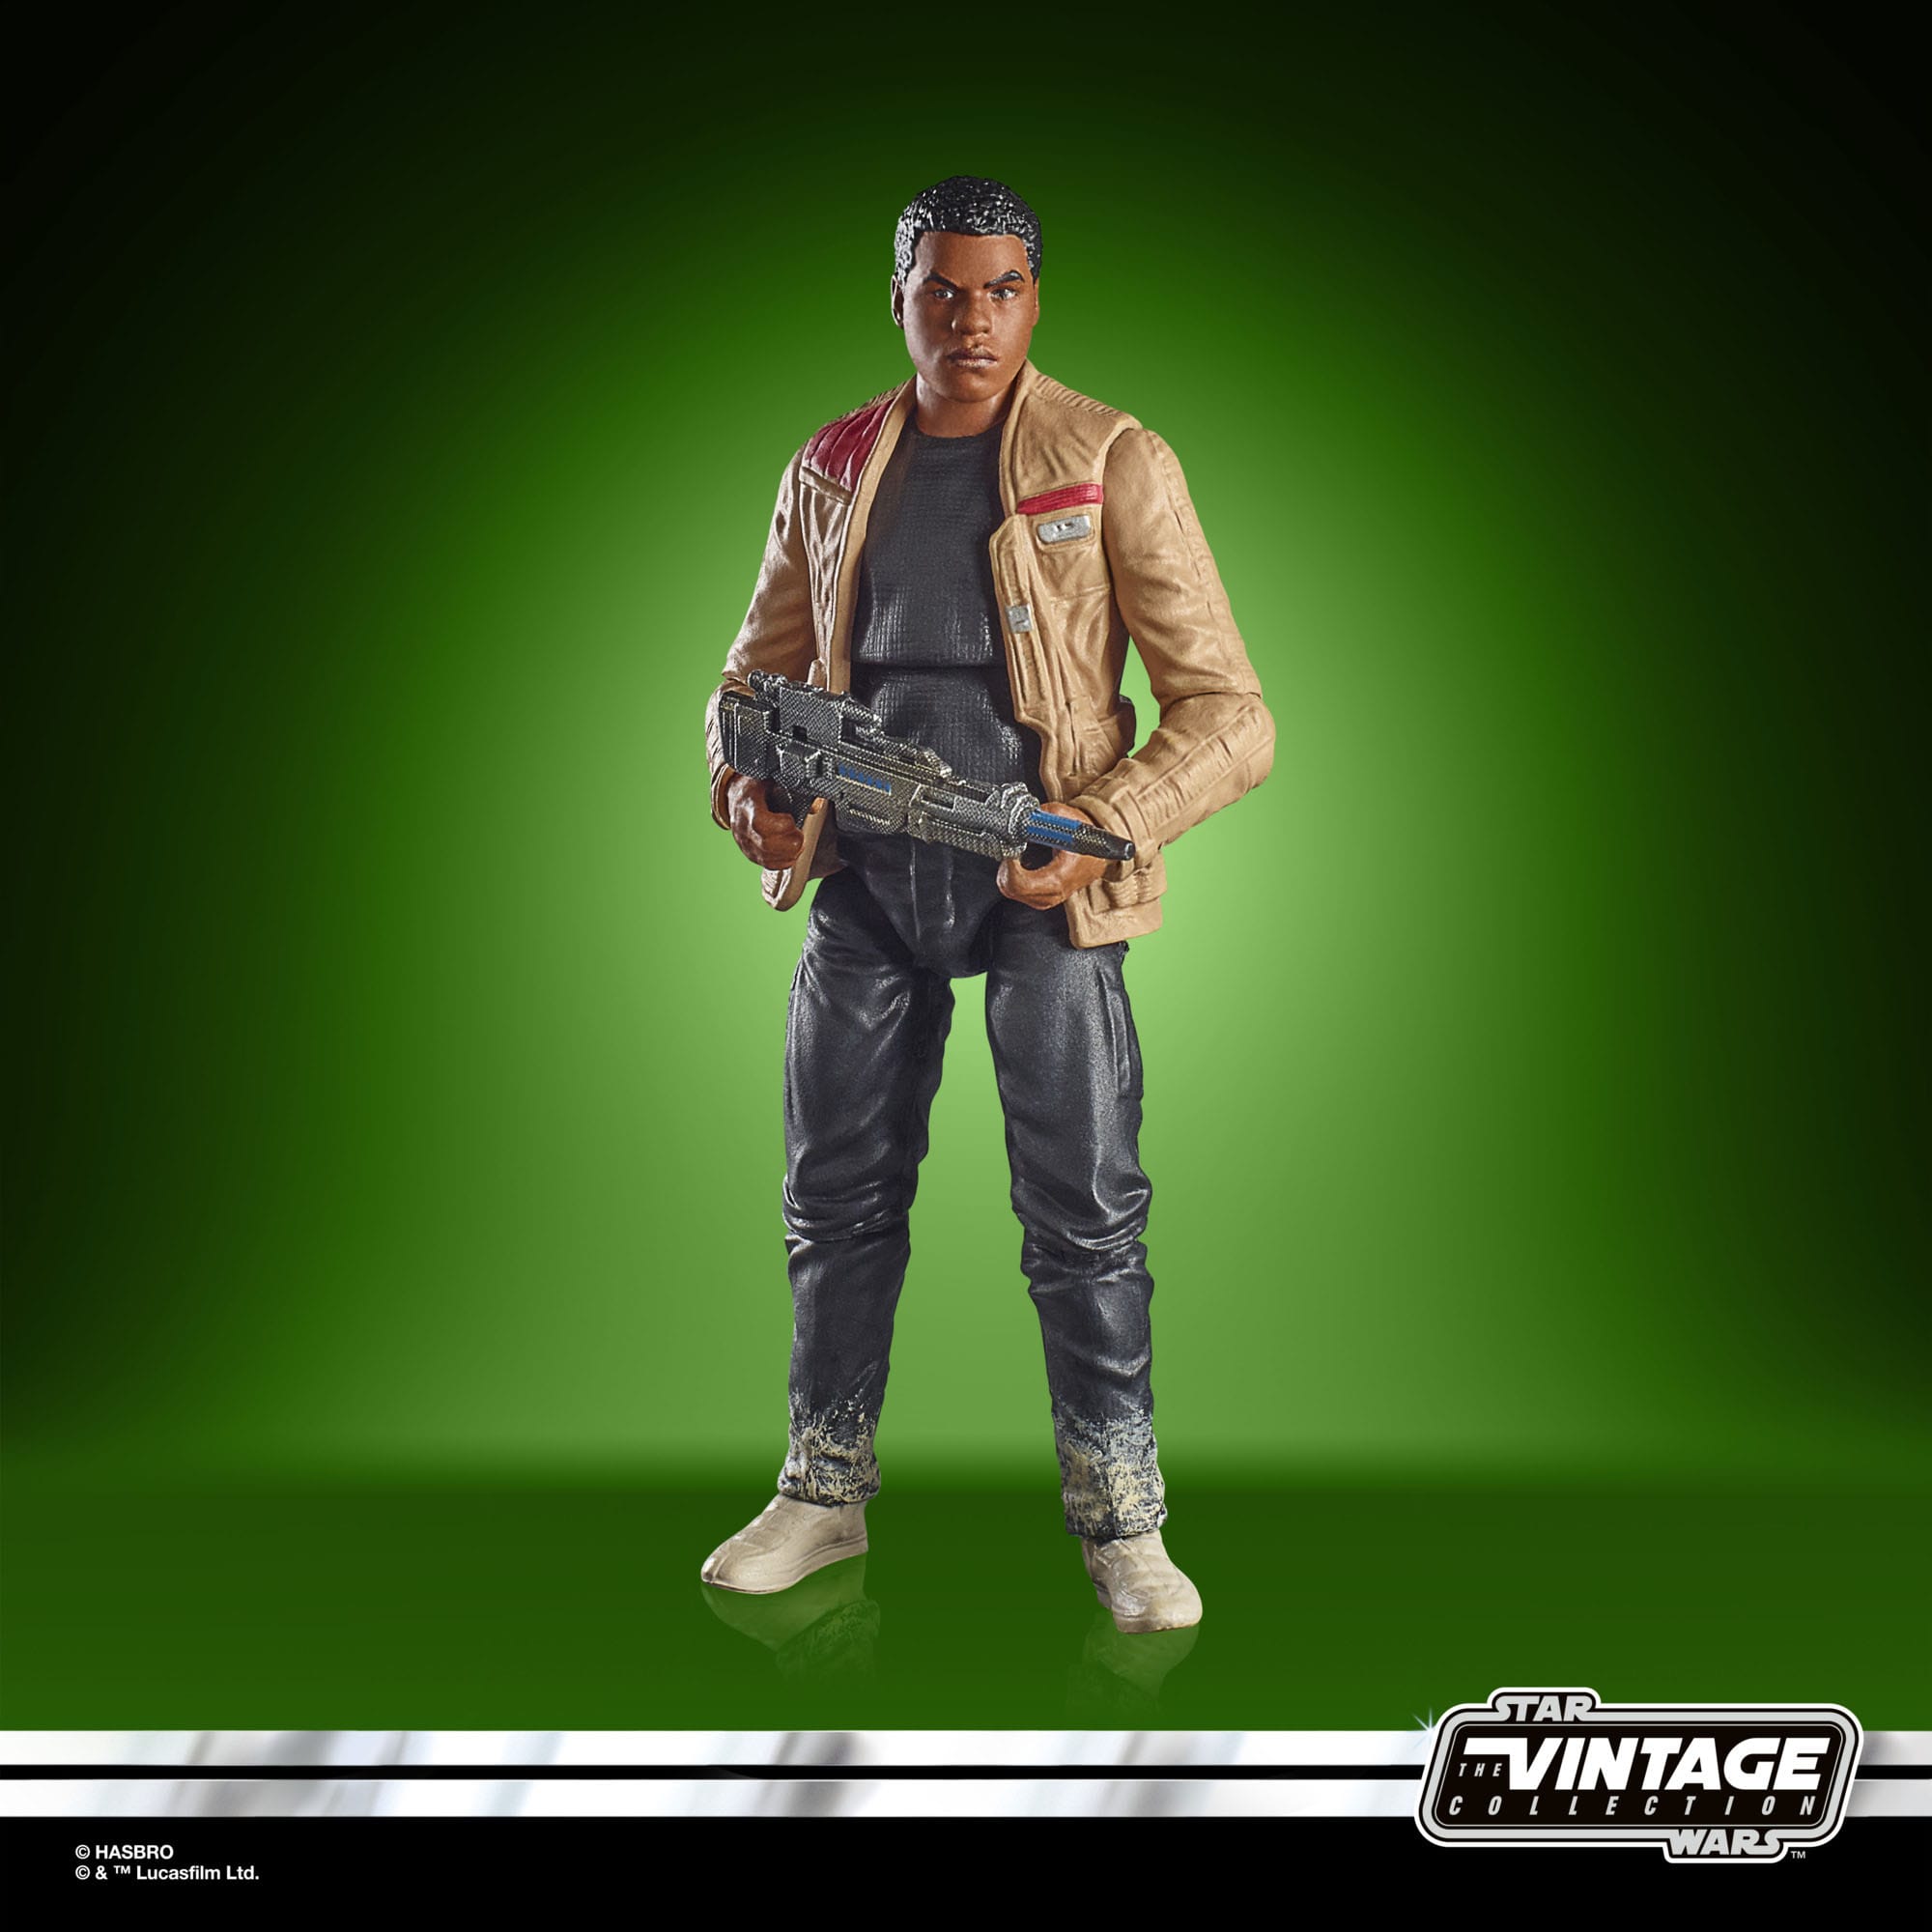 Star Wars Episode VII Vintage Collection Actionfigur Finn (Starkiller Base) 10 cm HASF9974 5010996202918